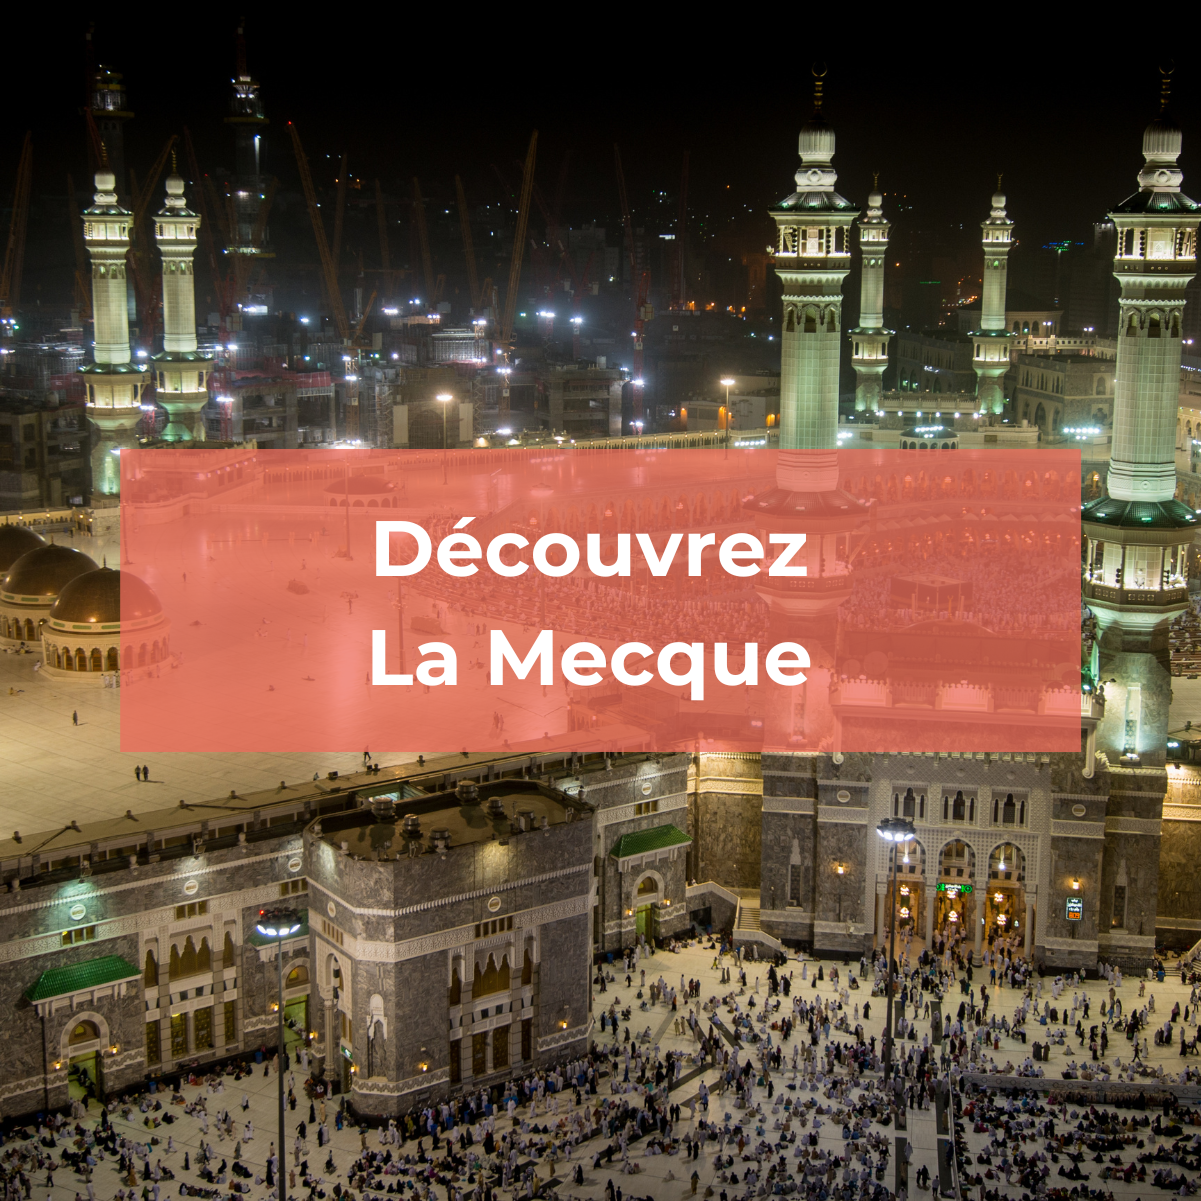 Découvrez La Mecque, la ville sainte de l'Islam